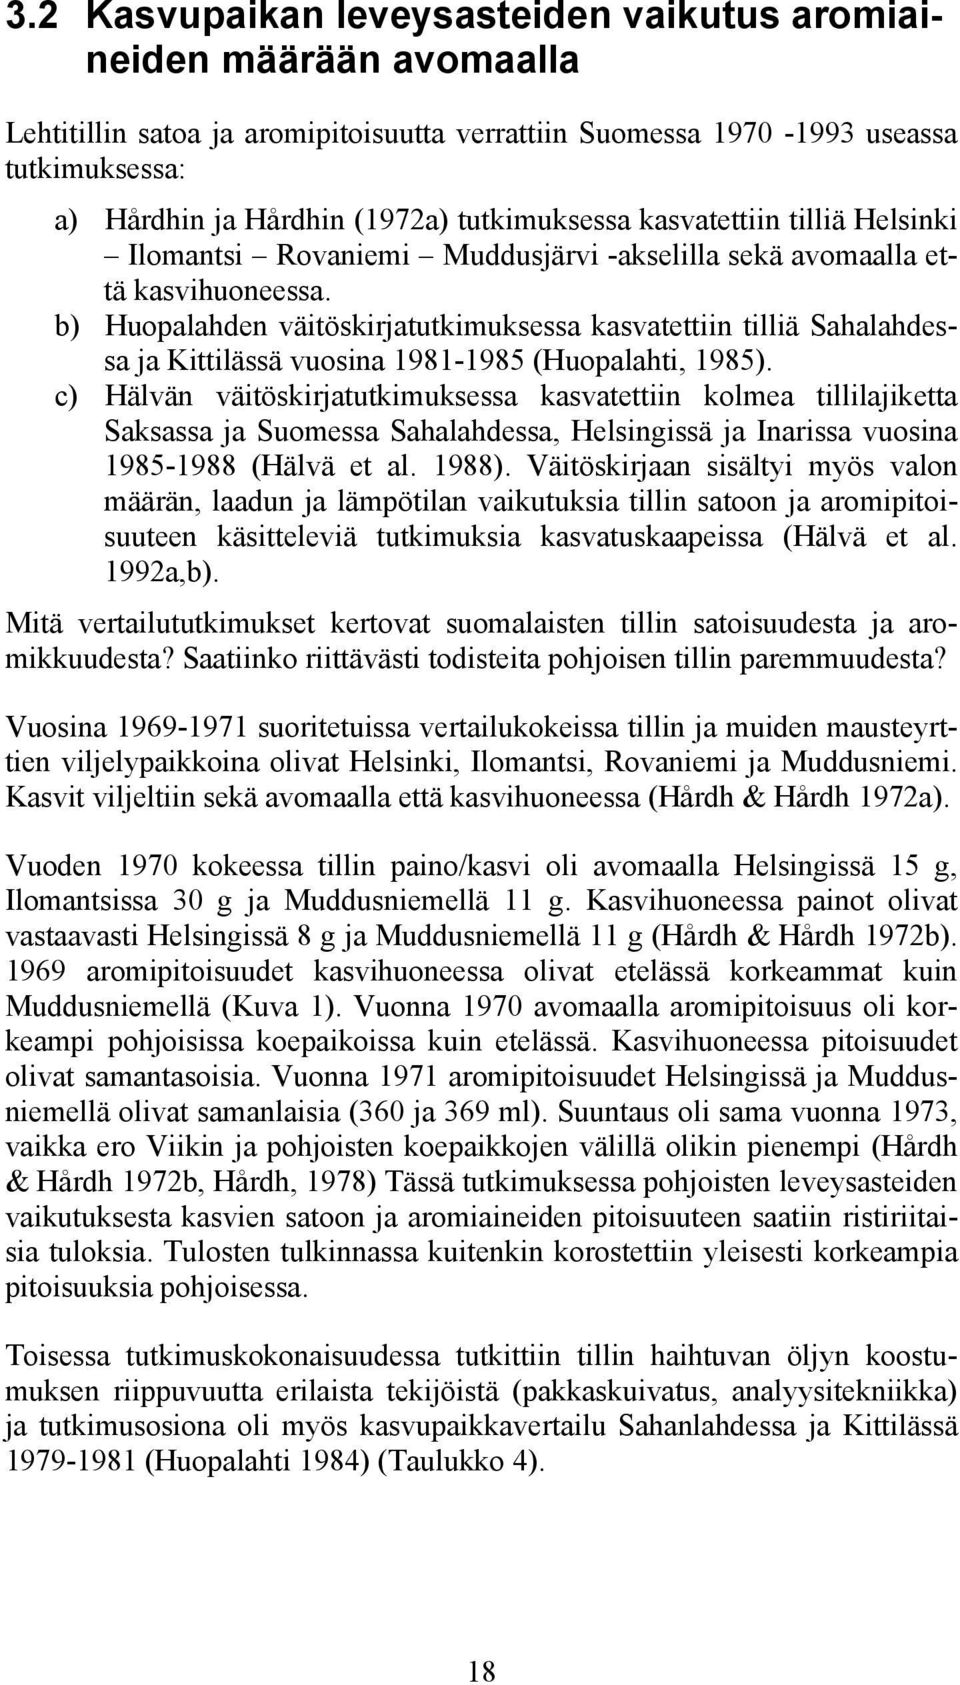 b) Huopalahden väitöskirjatutkimuksessa kasvatettiin tilliä Sahalahdessa ja Kittilässä vuosina 1981-1985 (Huopalahti, 1985).